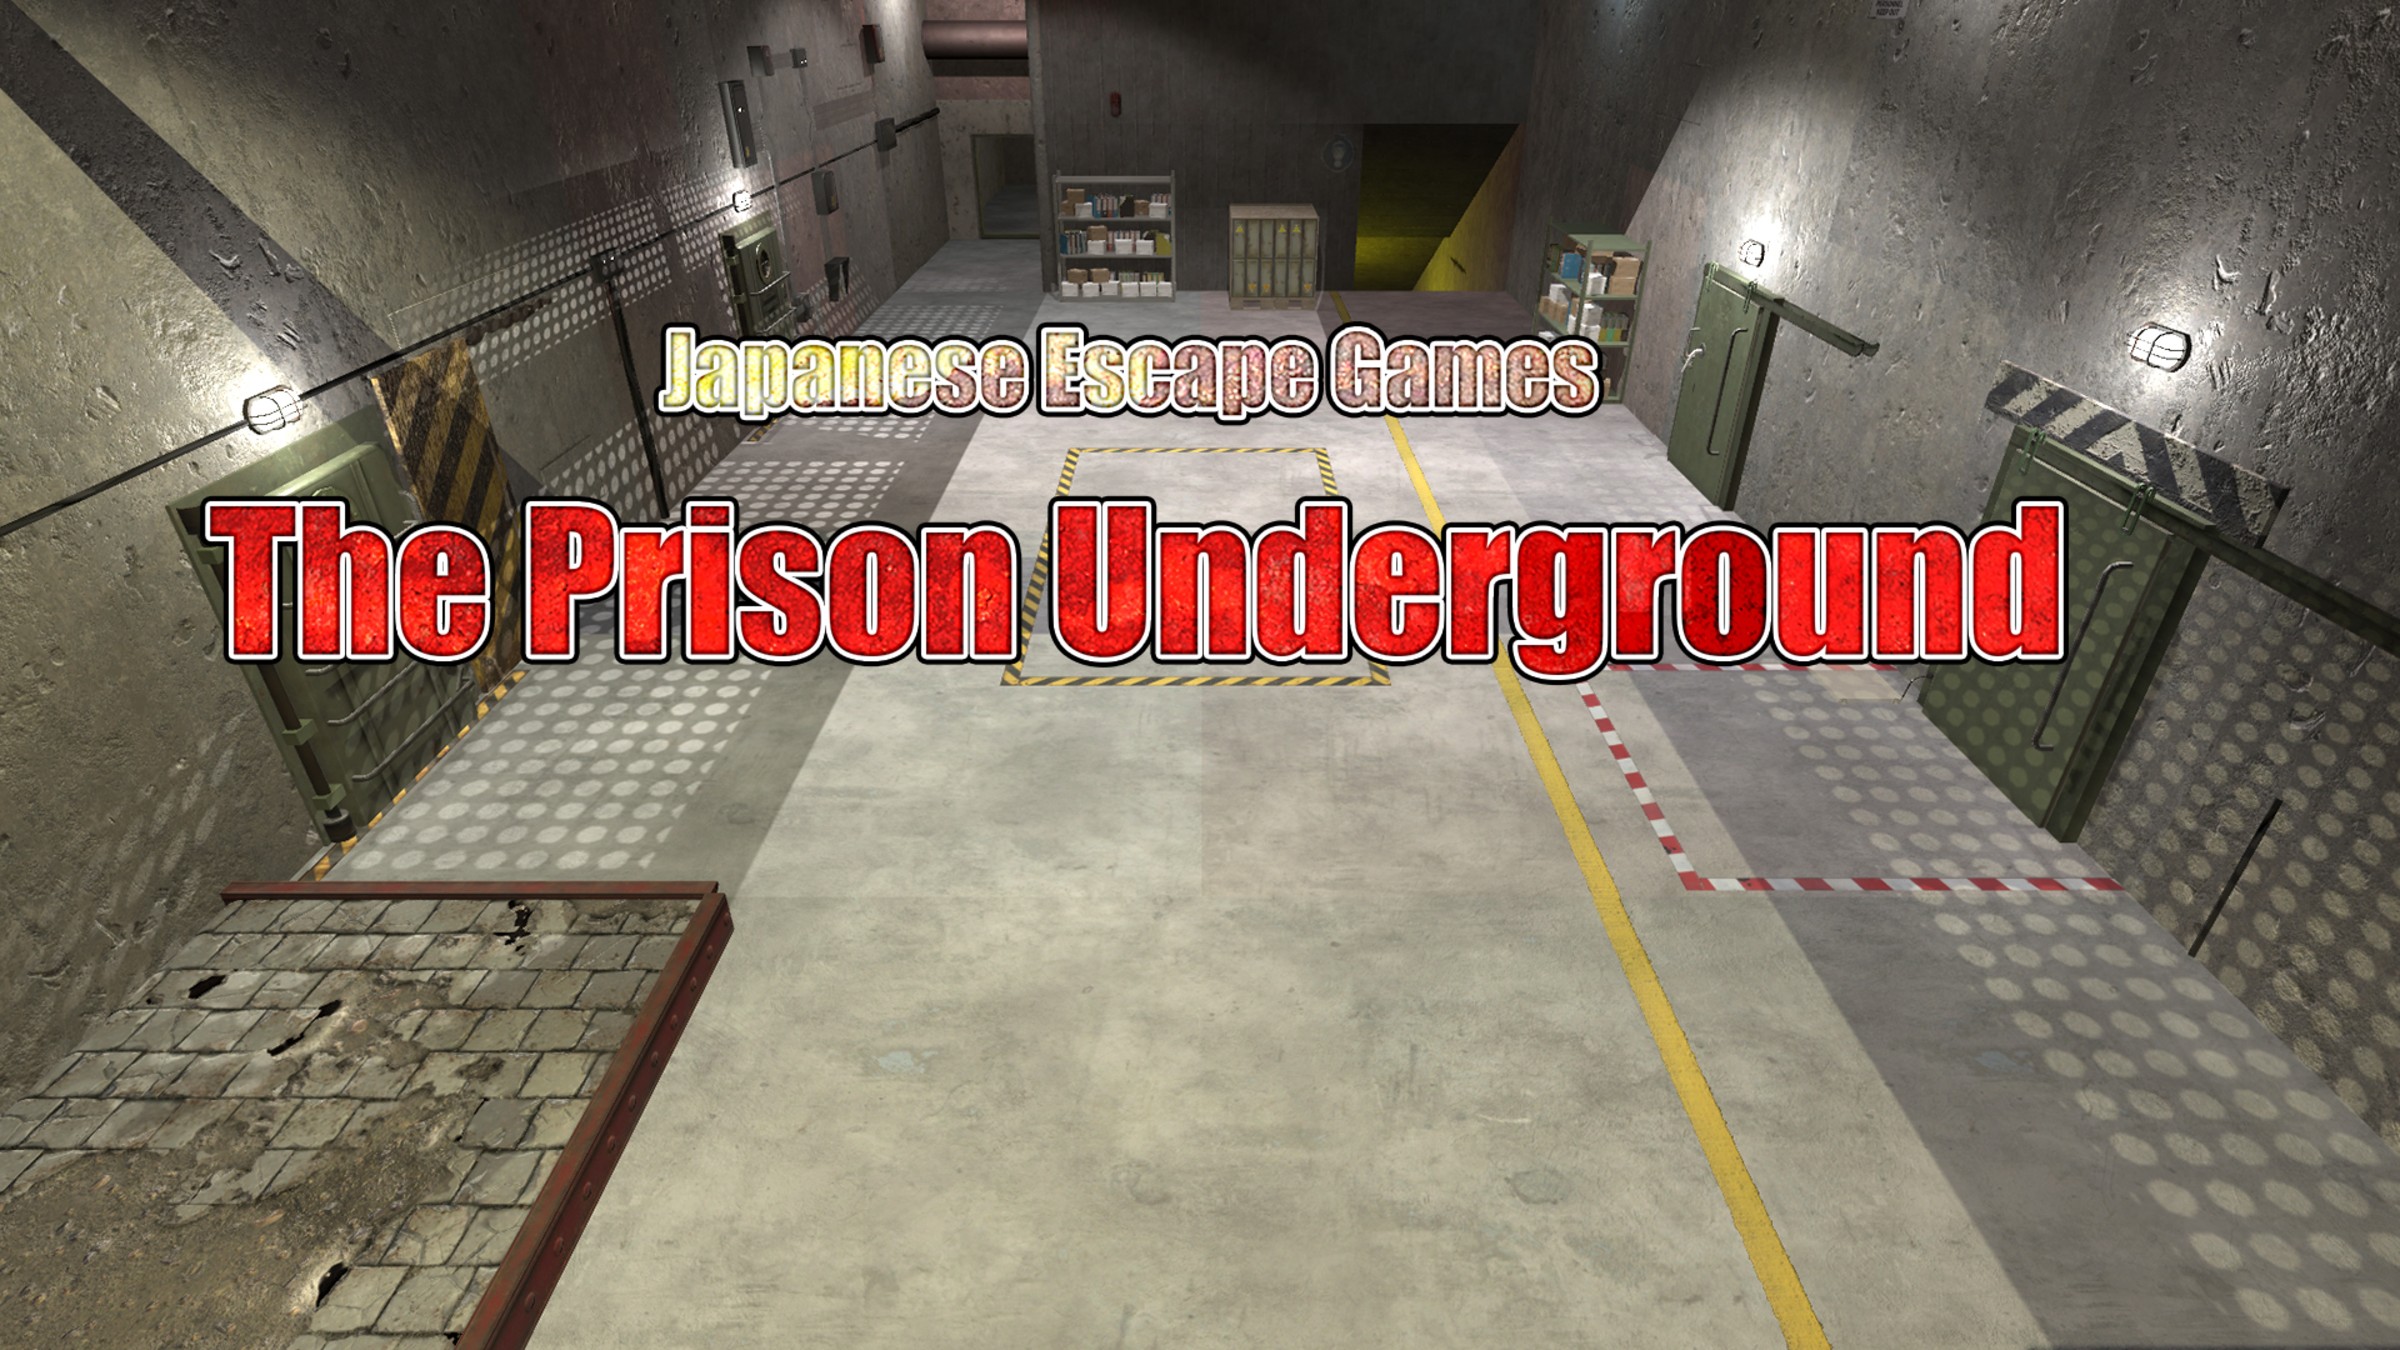 Room Escape Prison Break Walkthrough Full Game